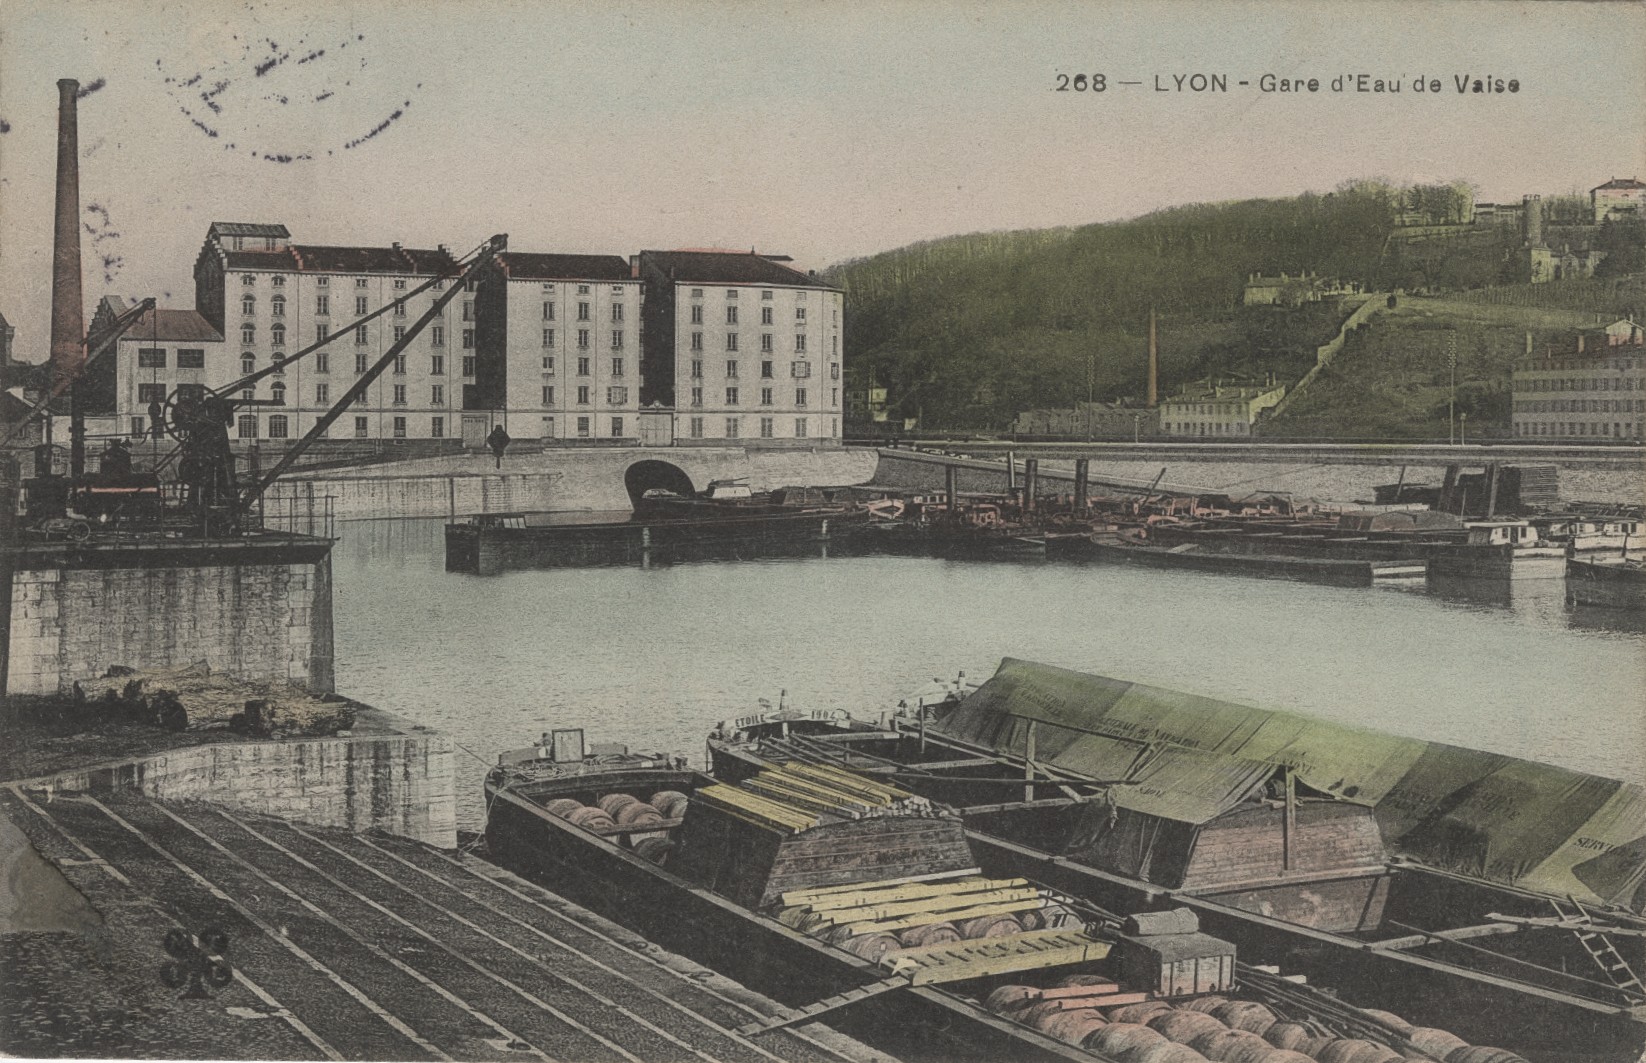 Lyon - Gare d'eau de Vaise : carte postale colorisée (vers 1905, cote : 4FI/3416)